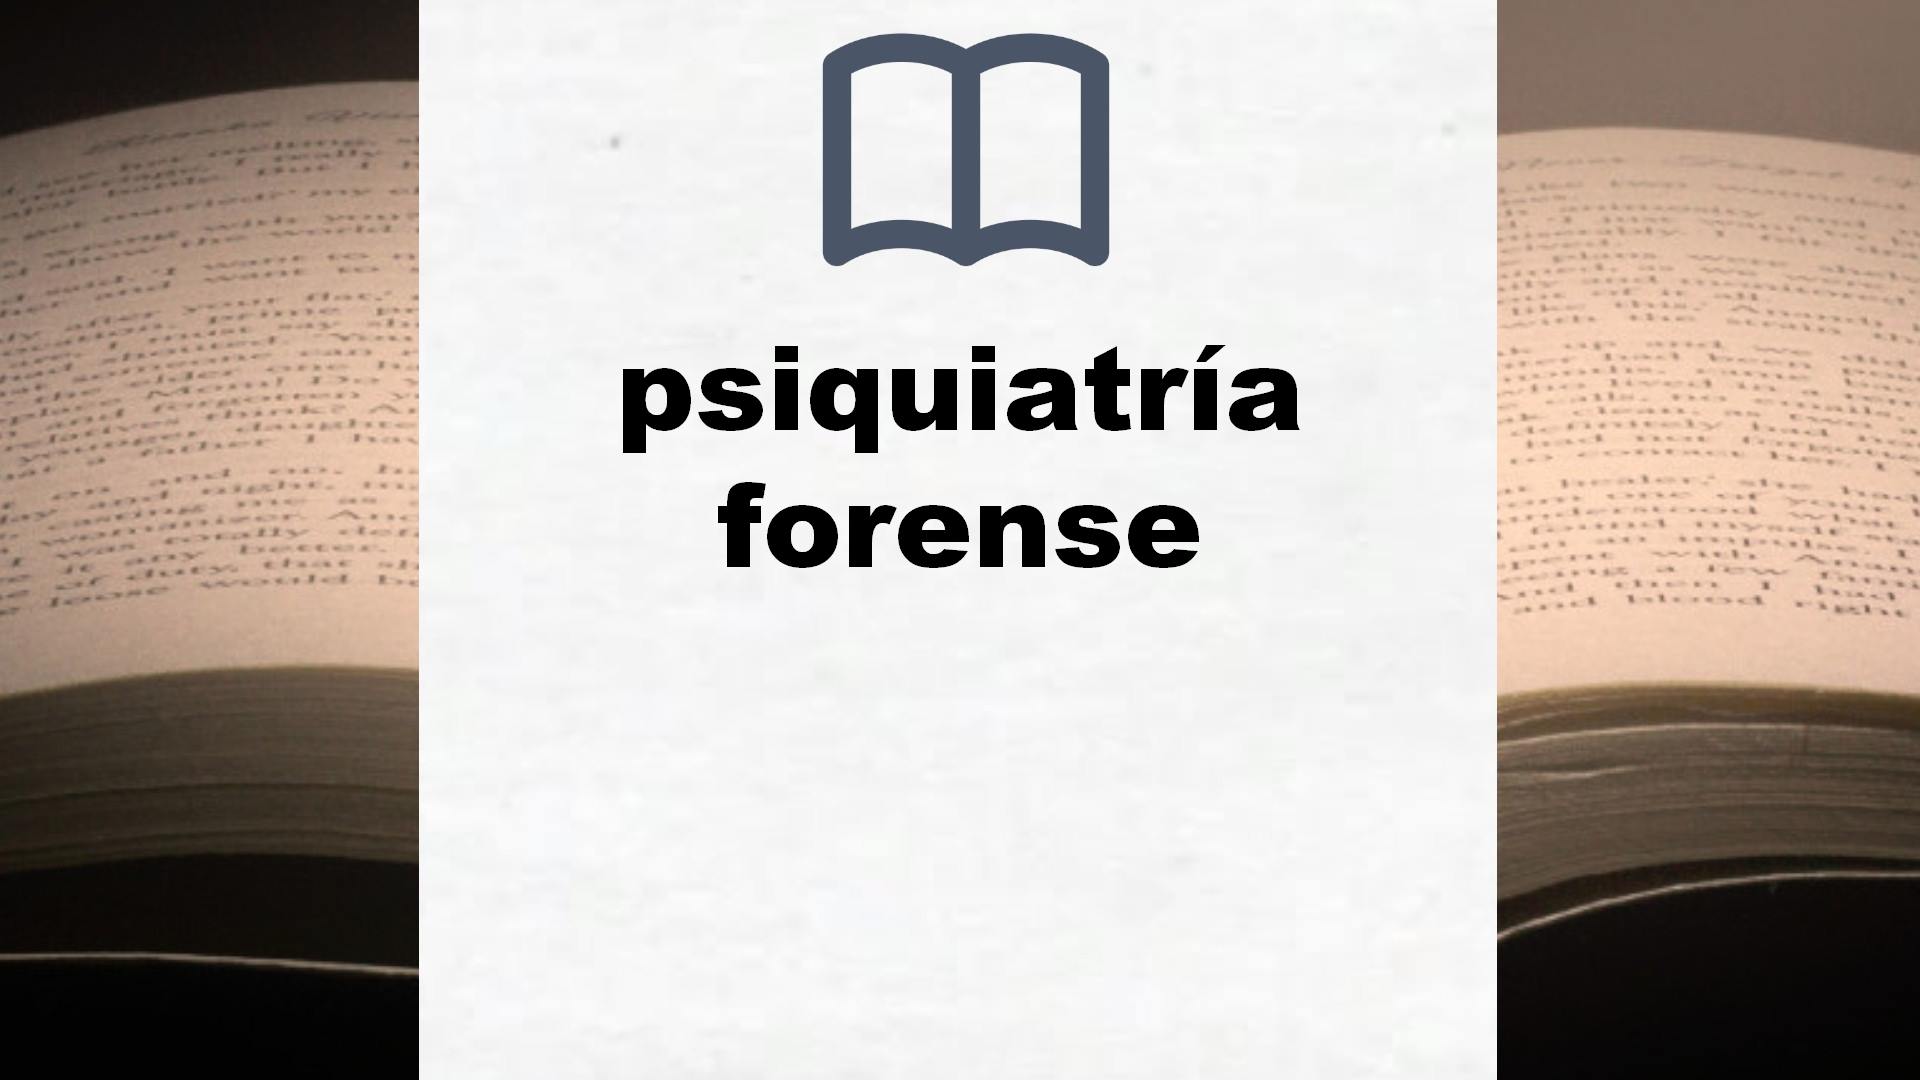 Libros sobre psiquiatría forense